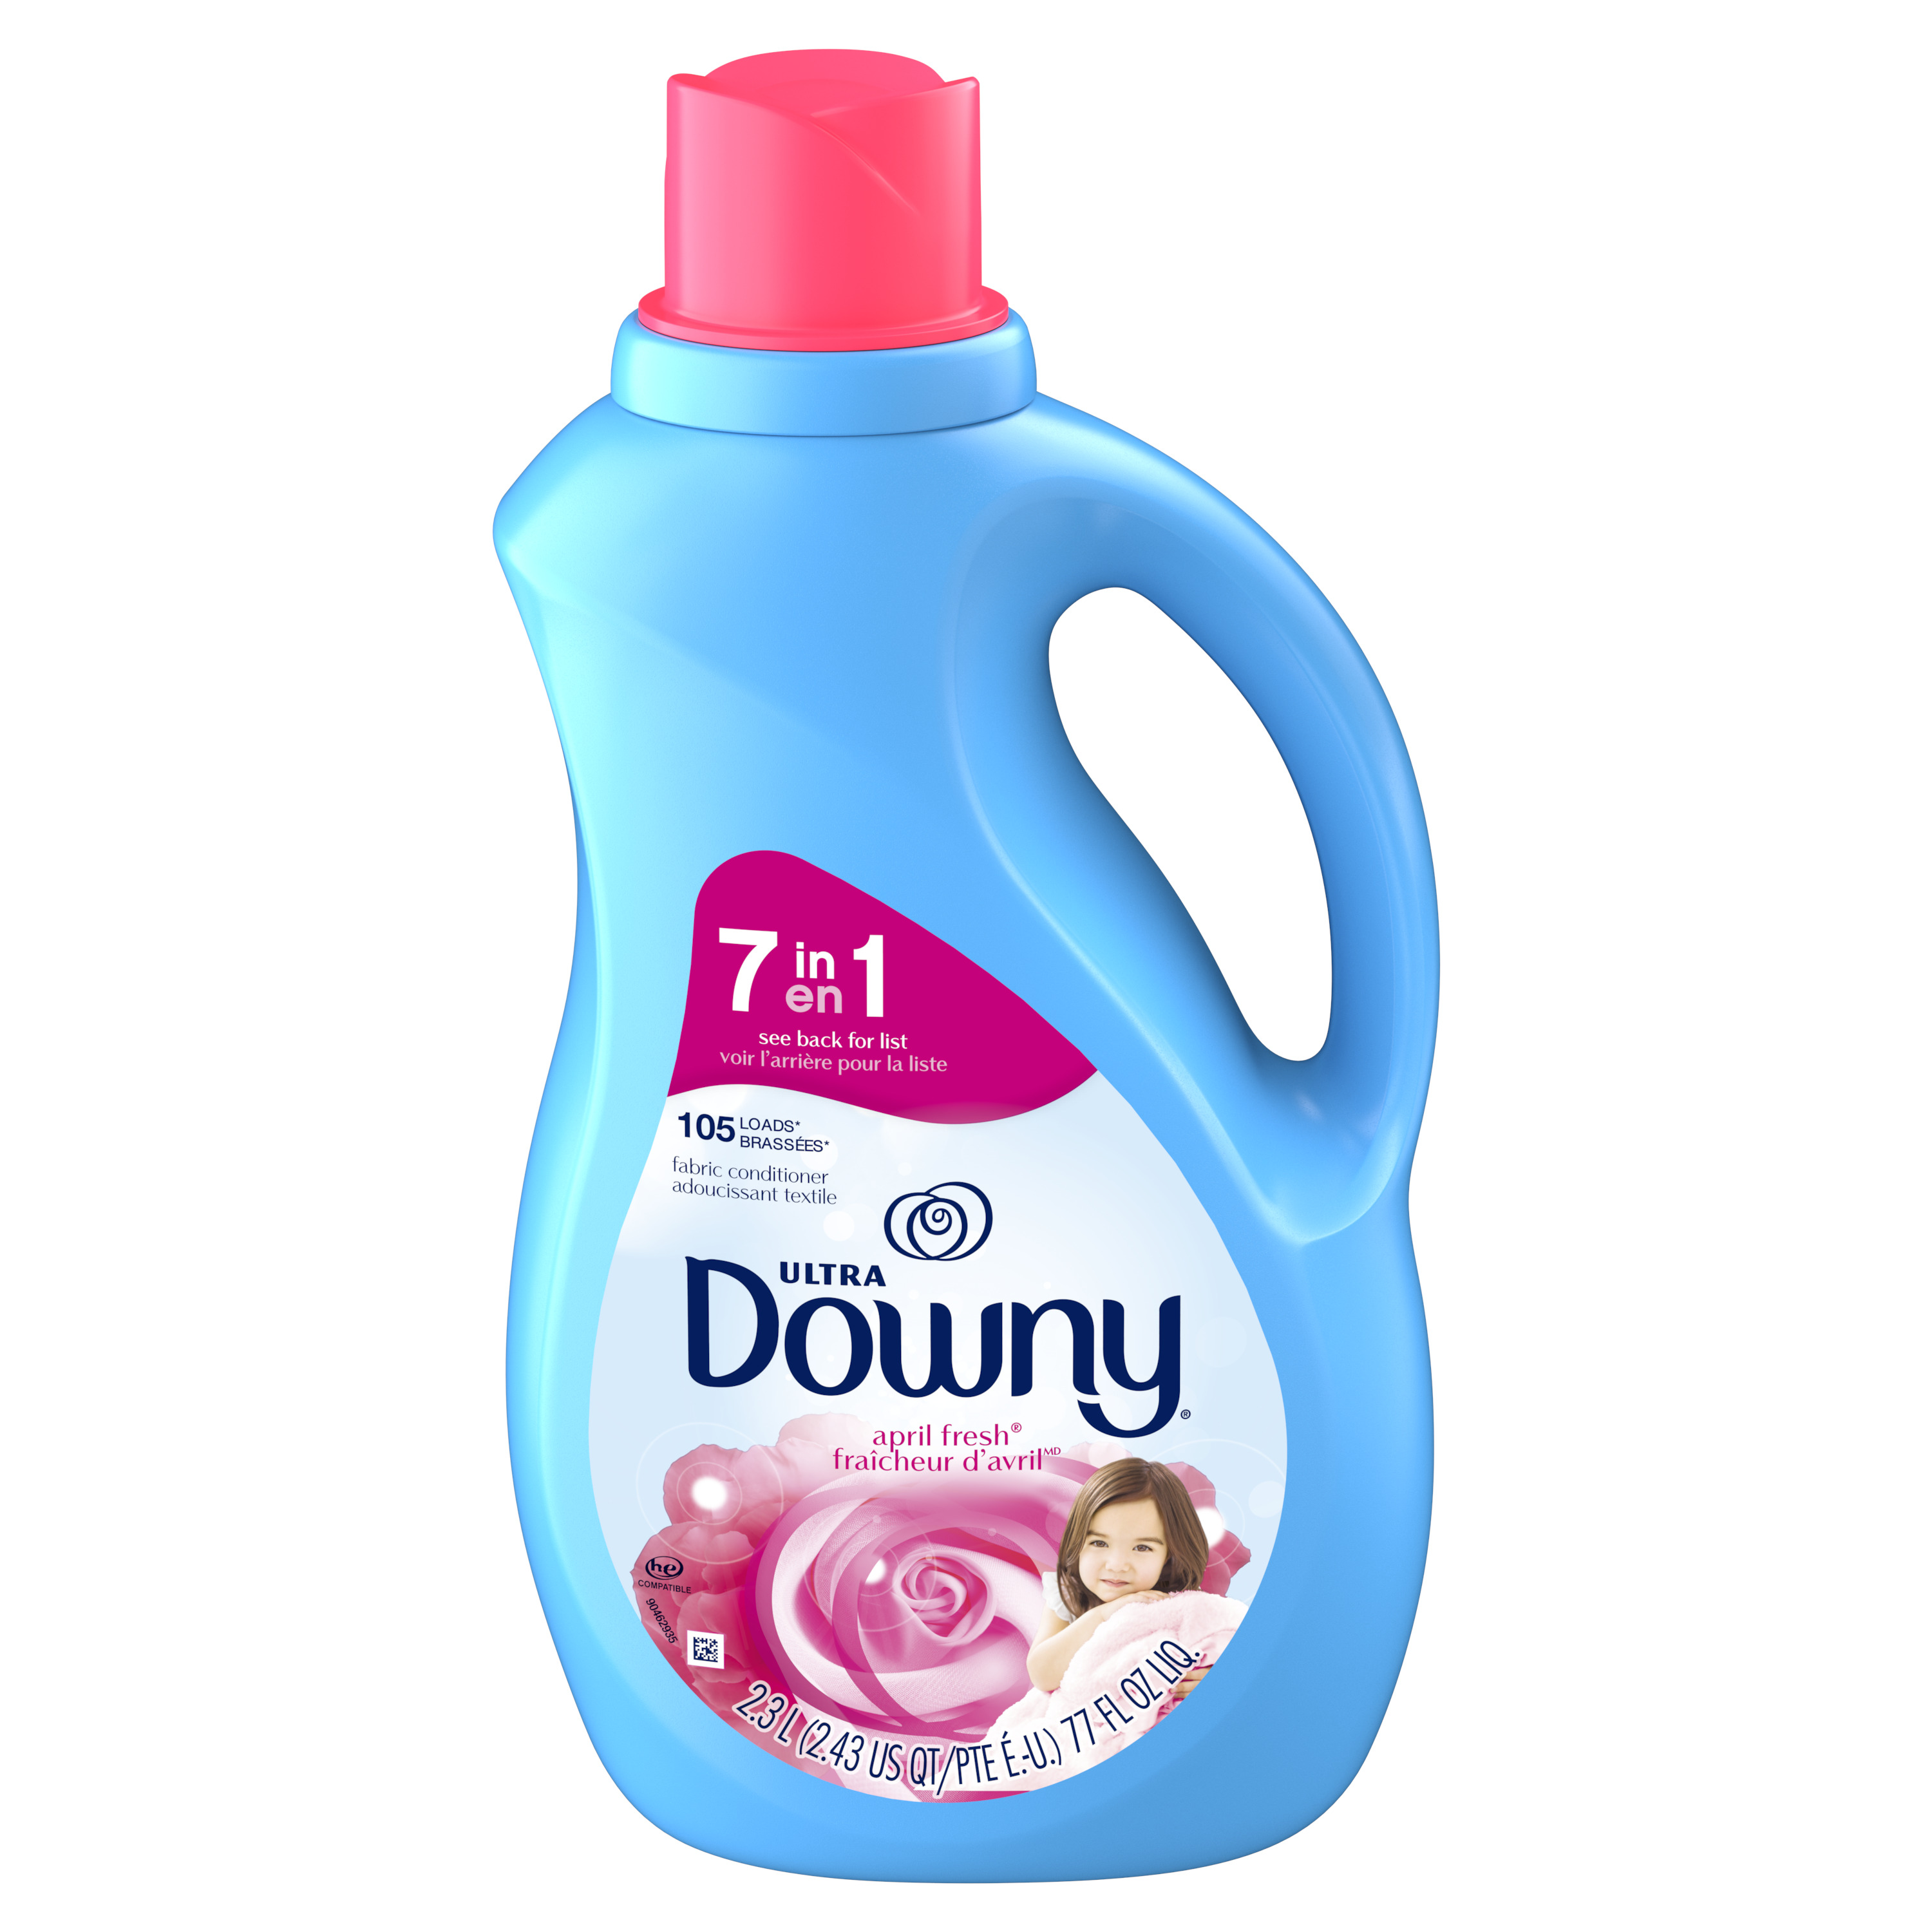 Downy Liquid Fabric Softener, April Fresh, 77 fl oz, 105 Loads - image 4 of 15